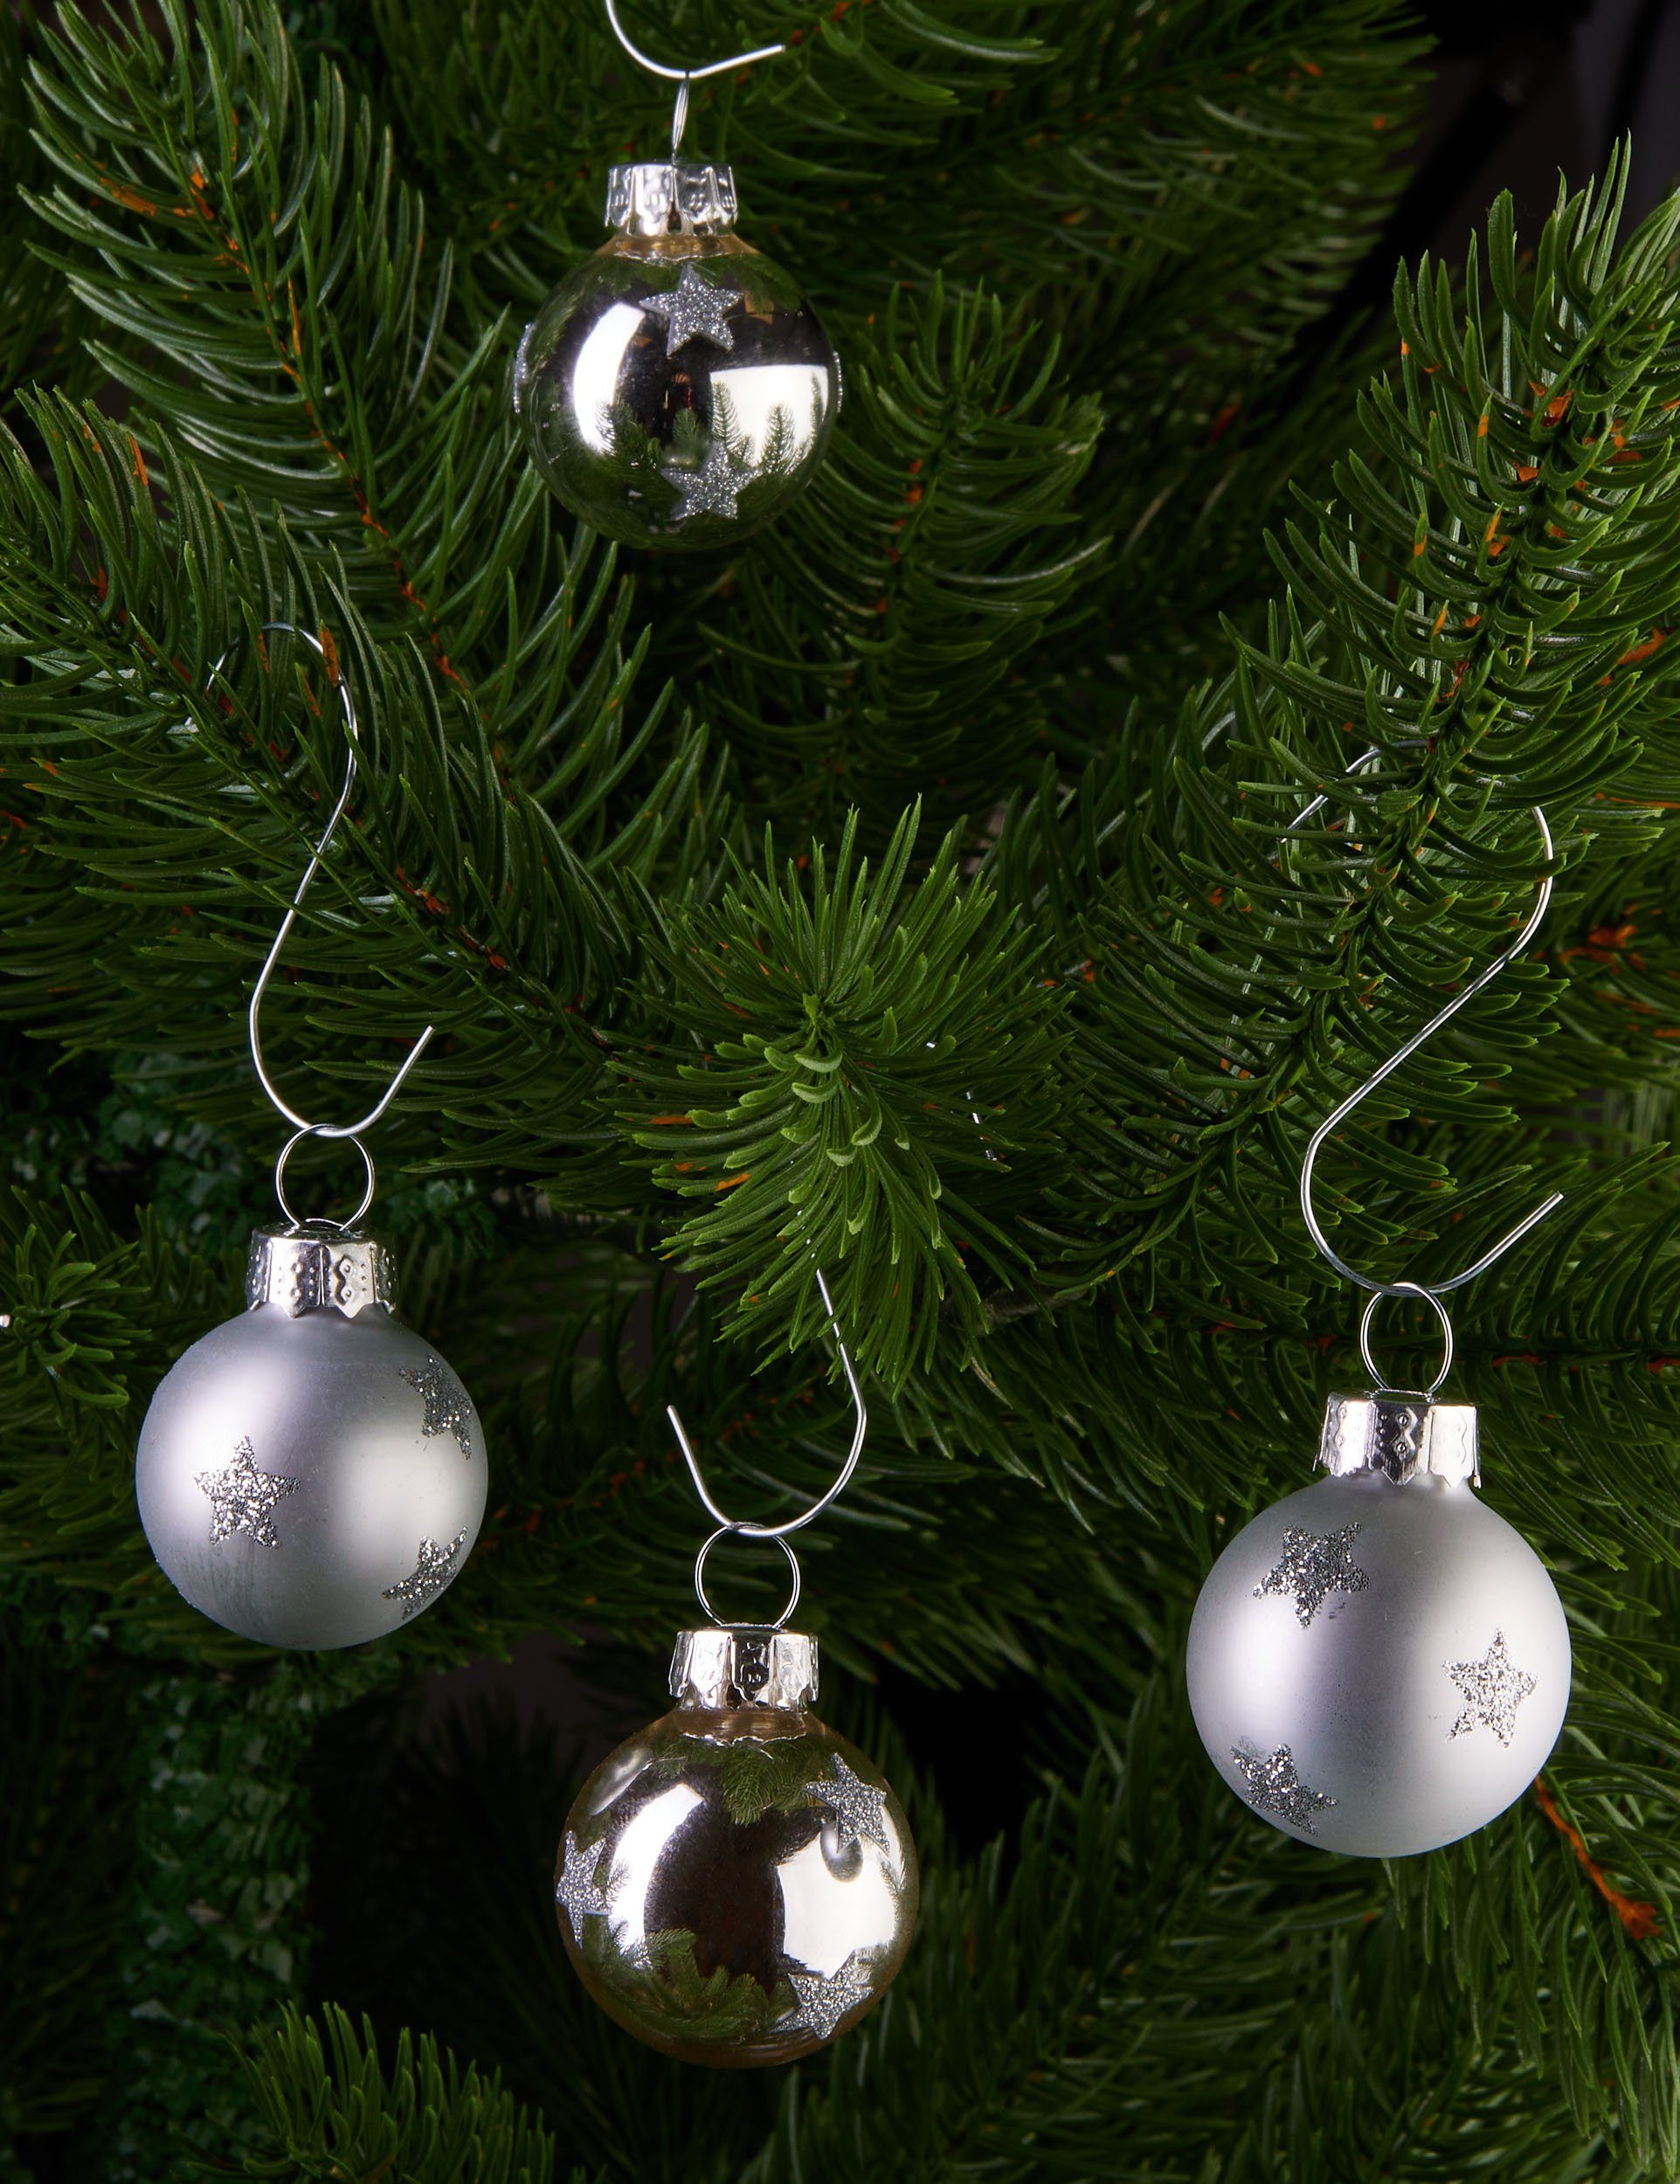 - Sternen (12 mit Weihnachtsbaum - BRUBAKER Weihnachtsdeko Glitzer Baumkugel cm St), für Weihnachtsbaumkugel Handbemalter Weihnachtskugeln Baumschmuck 3 Set und Silber Mini Kugeln